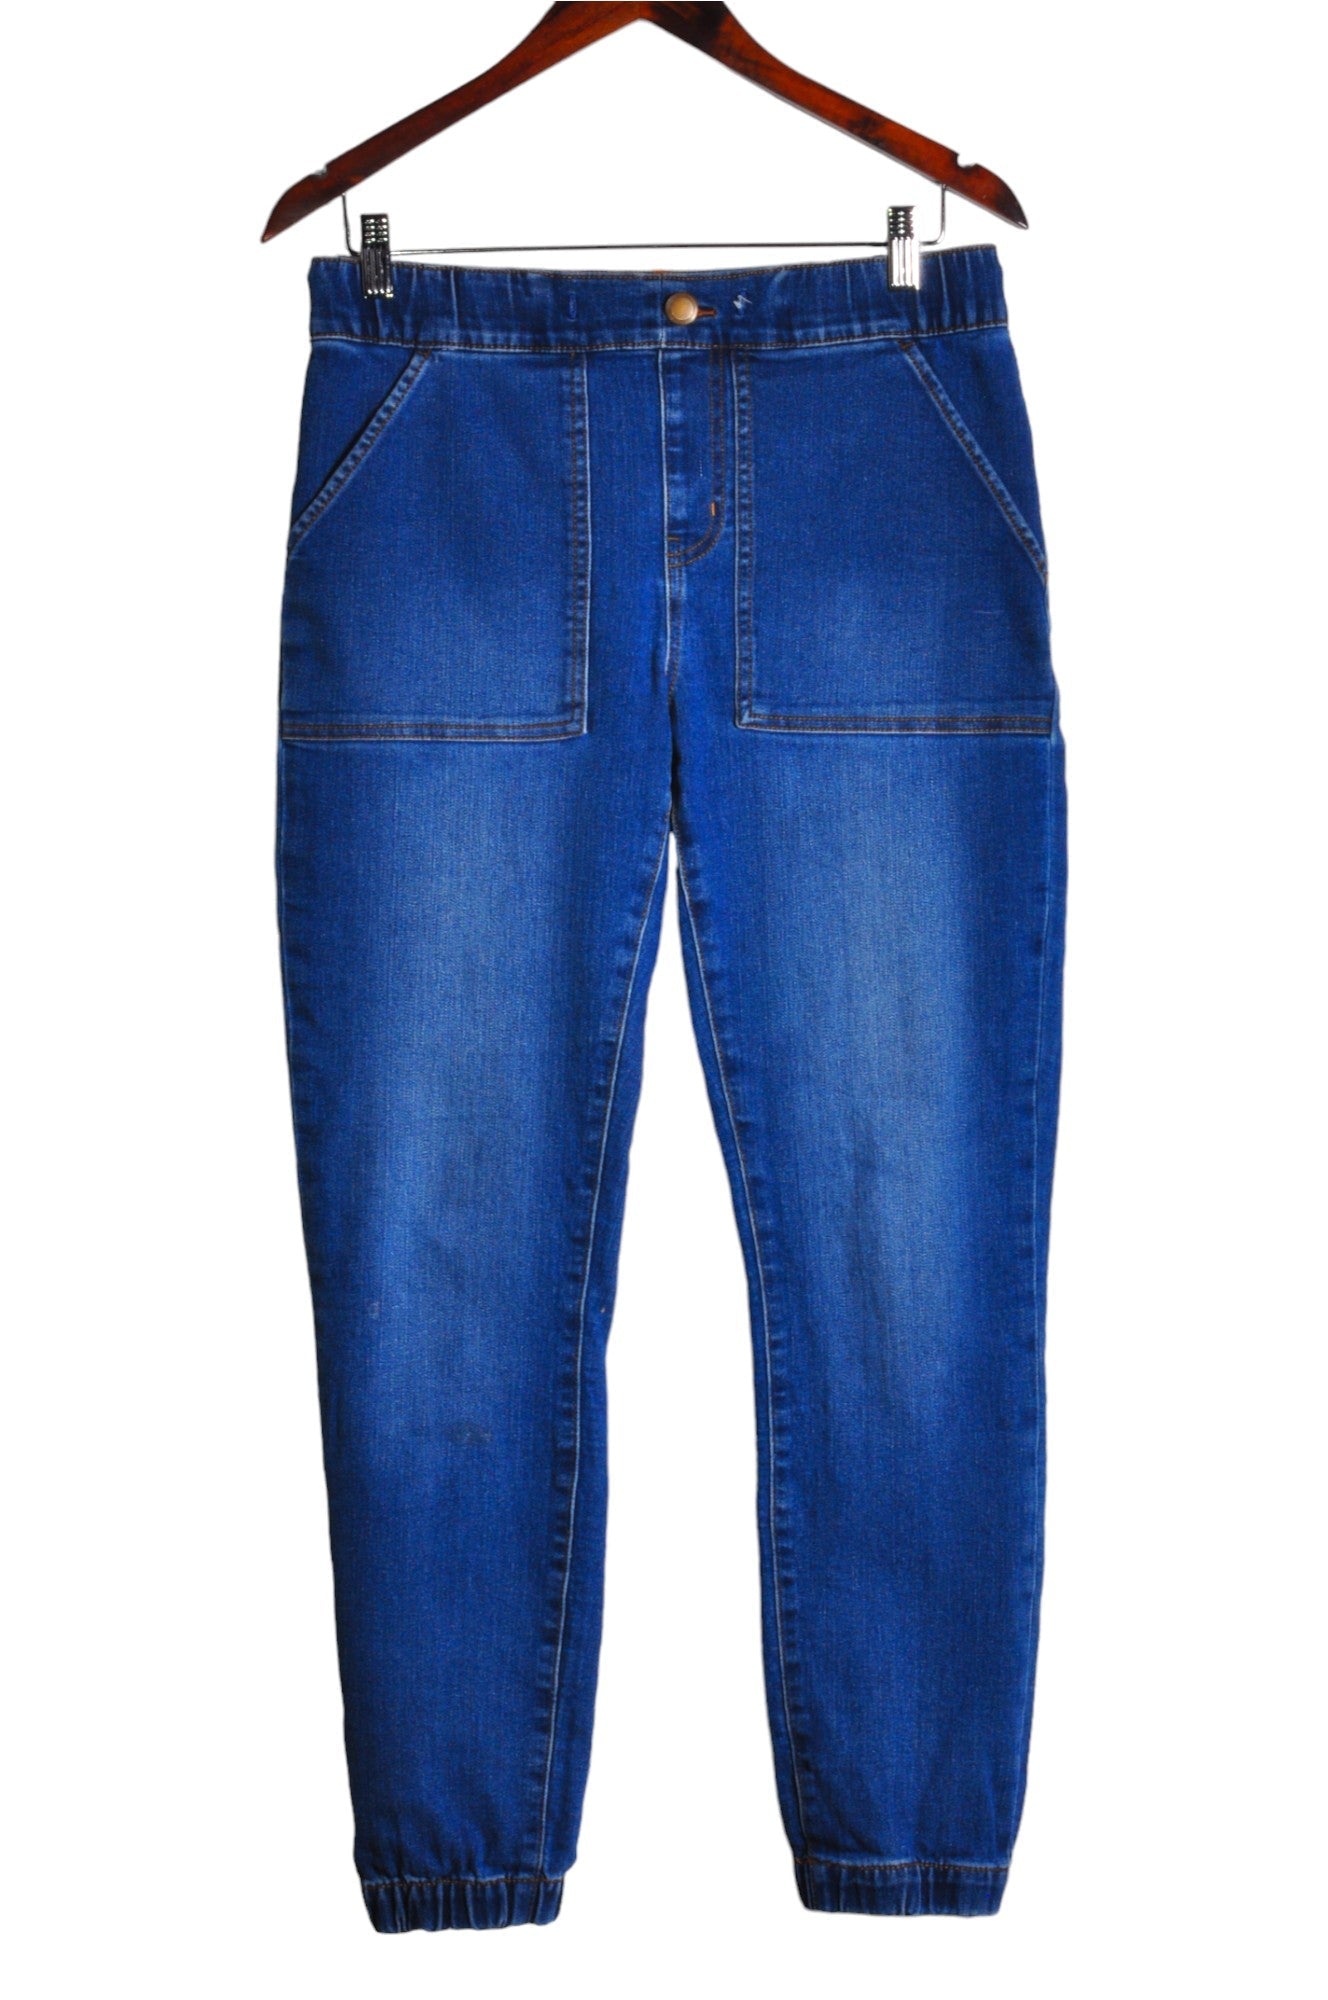 MY STYLE Women Straight-Legged Jeans Regular fit in Blue - Size 8 | 18 $ KOOP